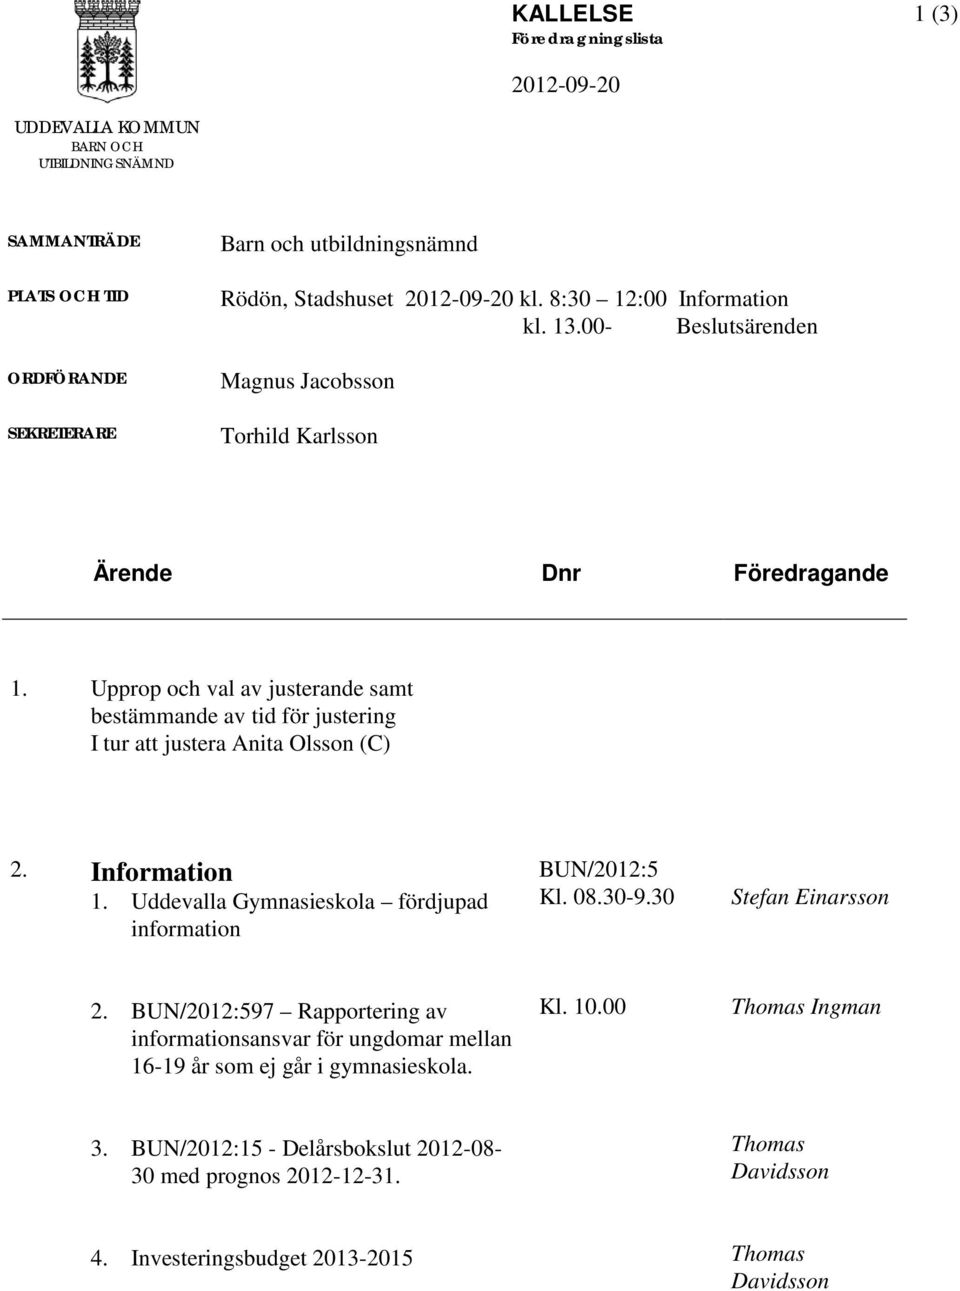 Upprop och val av justerande samt bestämmande av tid för justering I tur att justera Anita Olsson (C) 2. Information 1. Uddevalla Gymnasieskola fördjupad information BUN/2012:5 Kl. 08.30-9.